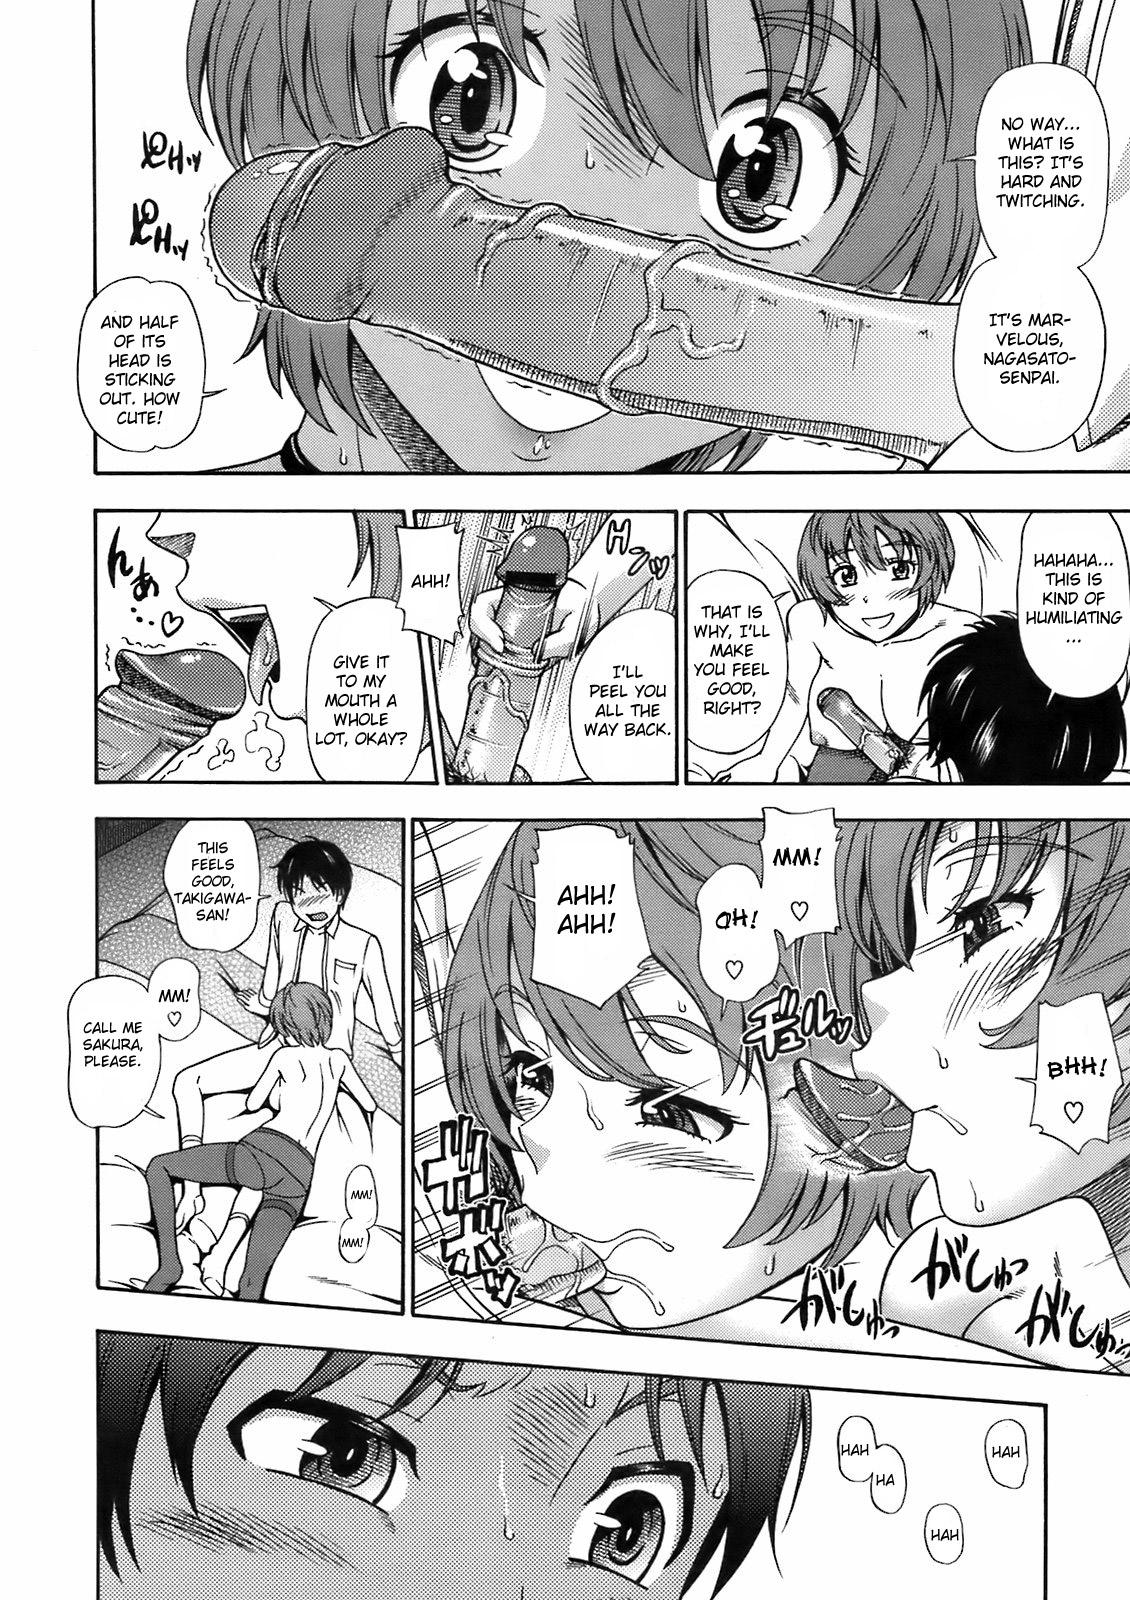 Safada Sakura Chiru Saku Gaystraight - Page 8